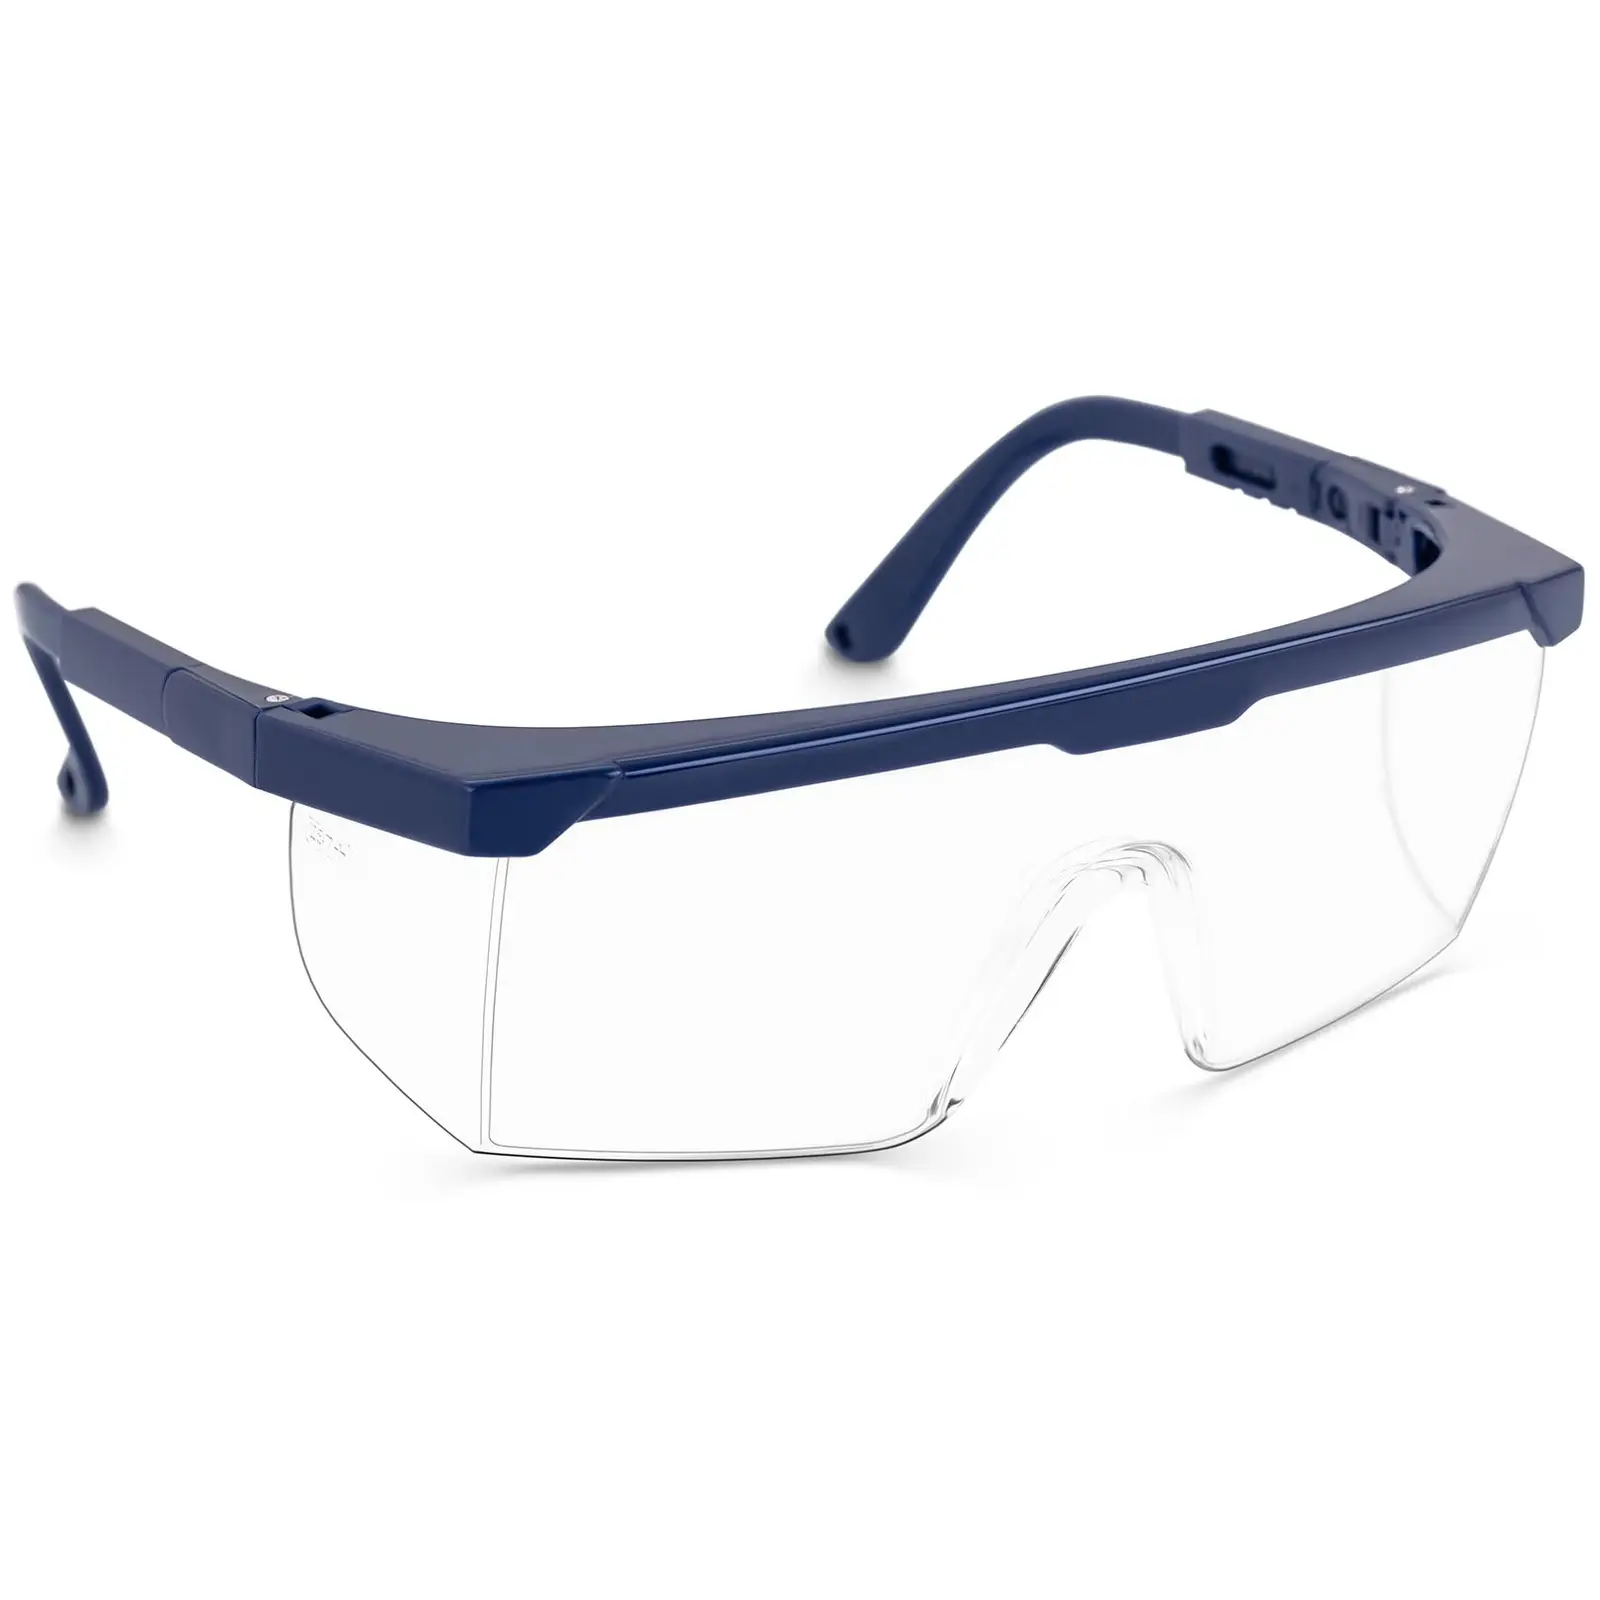 Ochranné brýle čiré EN166 nastavitelné 10 ks - Laboratorní příslušenství TECTOR